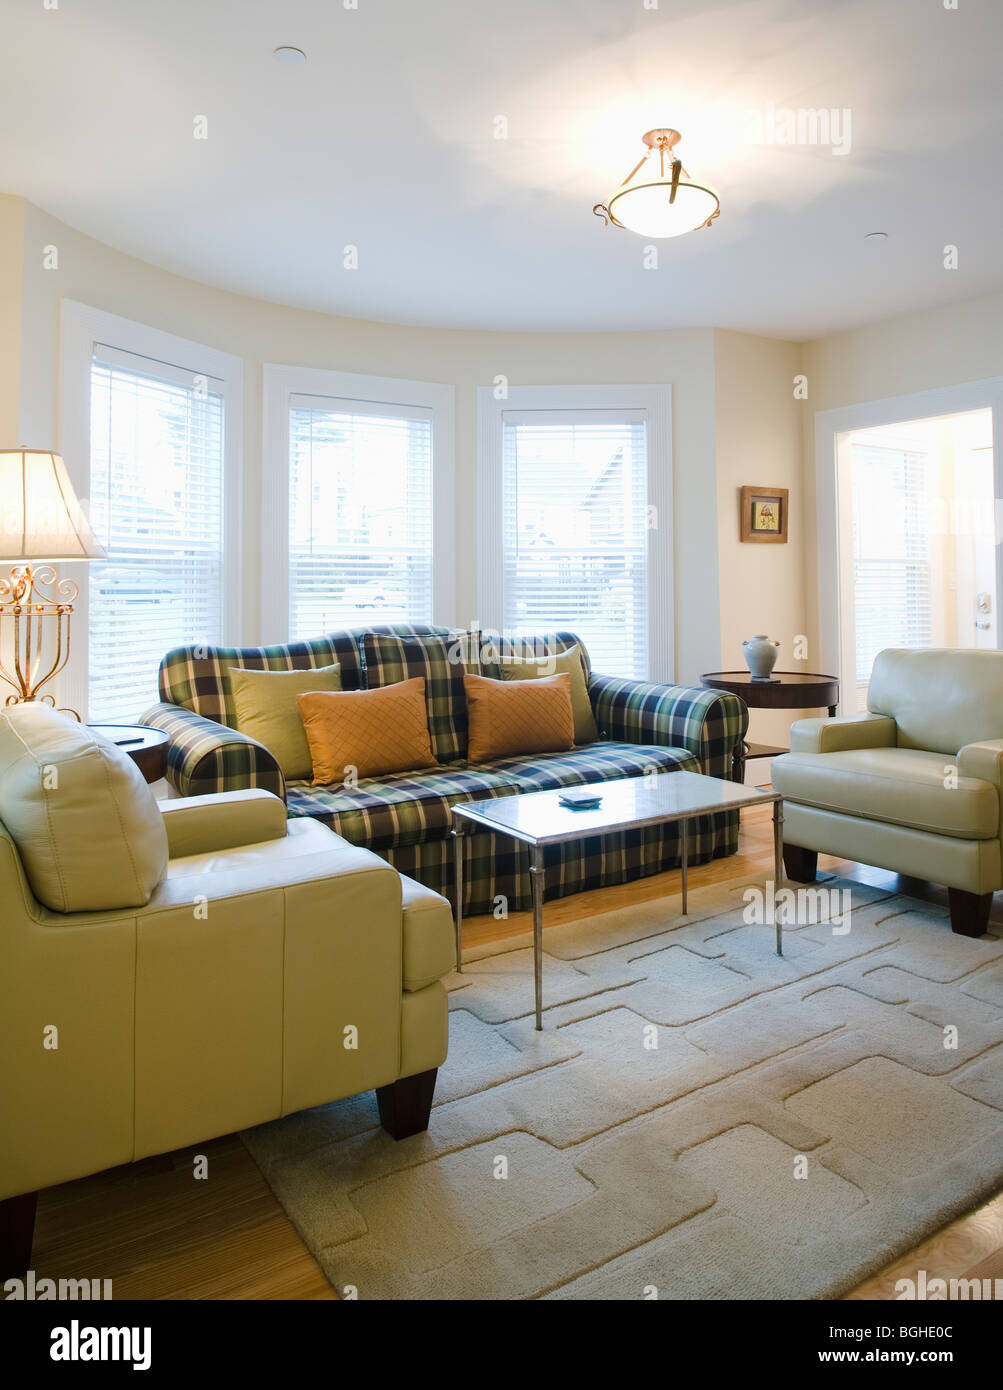 Wohnzimmer mit karierten sofa Stockfoto